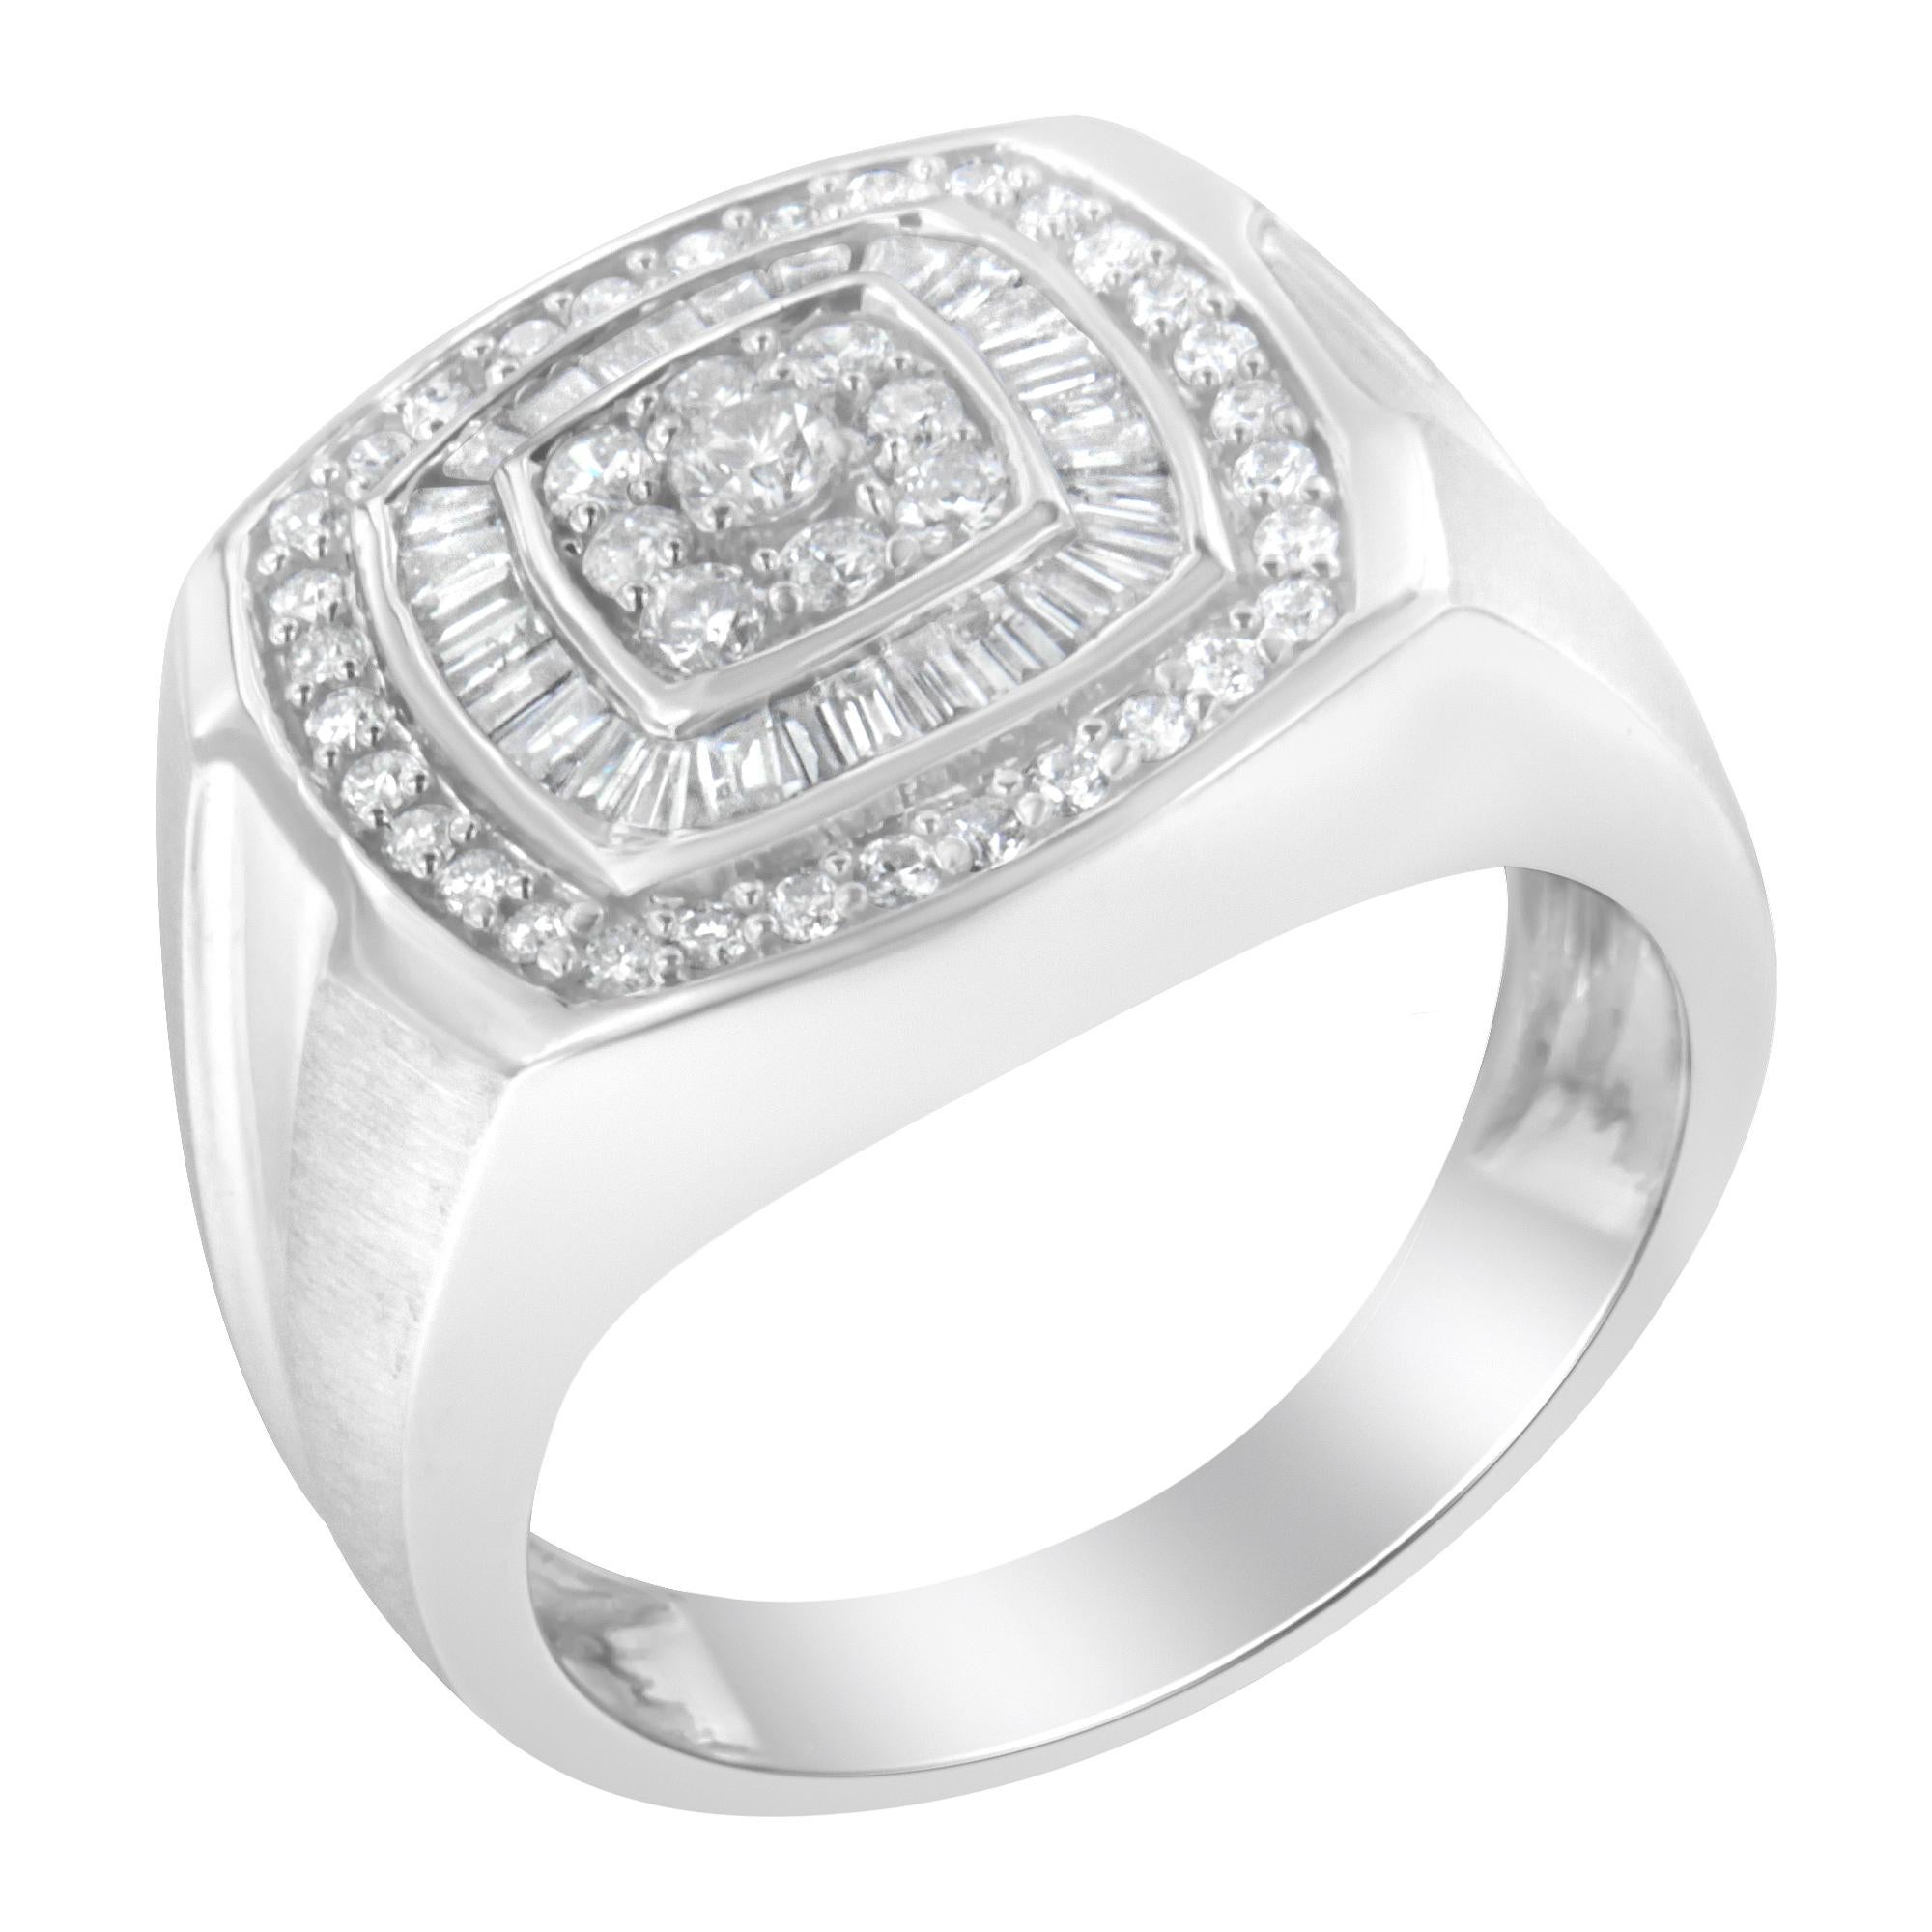 Dieser Diamantring für Männer aus 14-karätigem Weißgold ist stilvoll und klassisch. Die Spitze des eleganten Rings hat ein abgerundetes, quadratisches Design. In der Mitte befinden sich neun runde Diamanten, die mit Zacken in das quadratische Muster